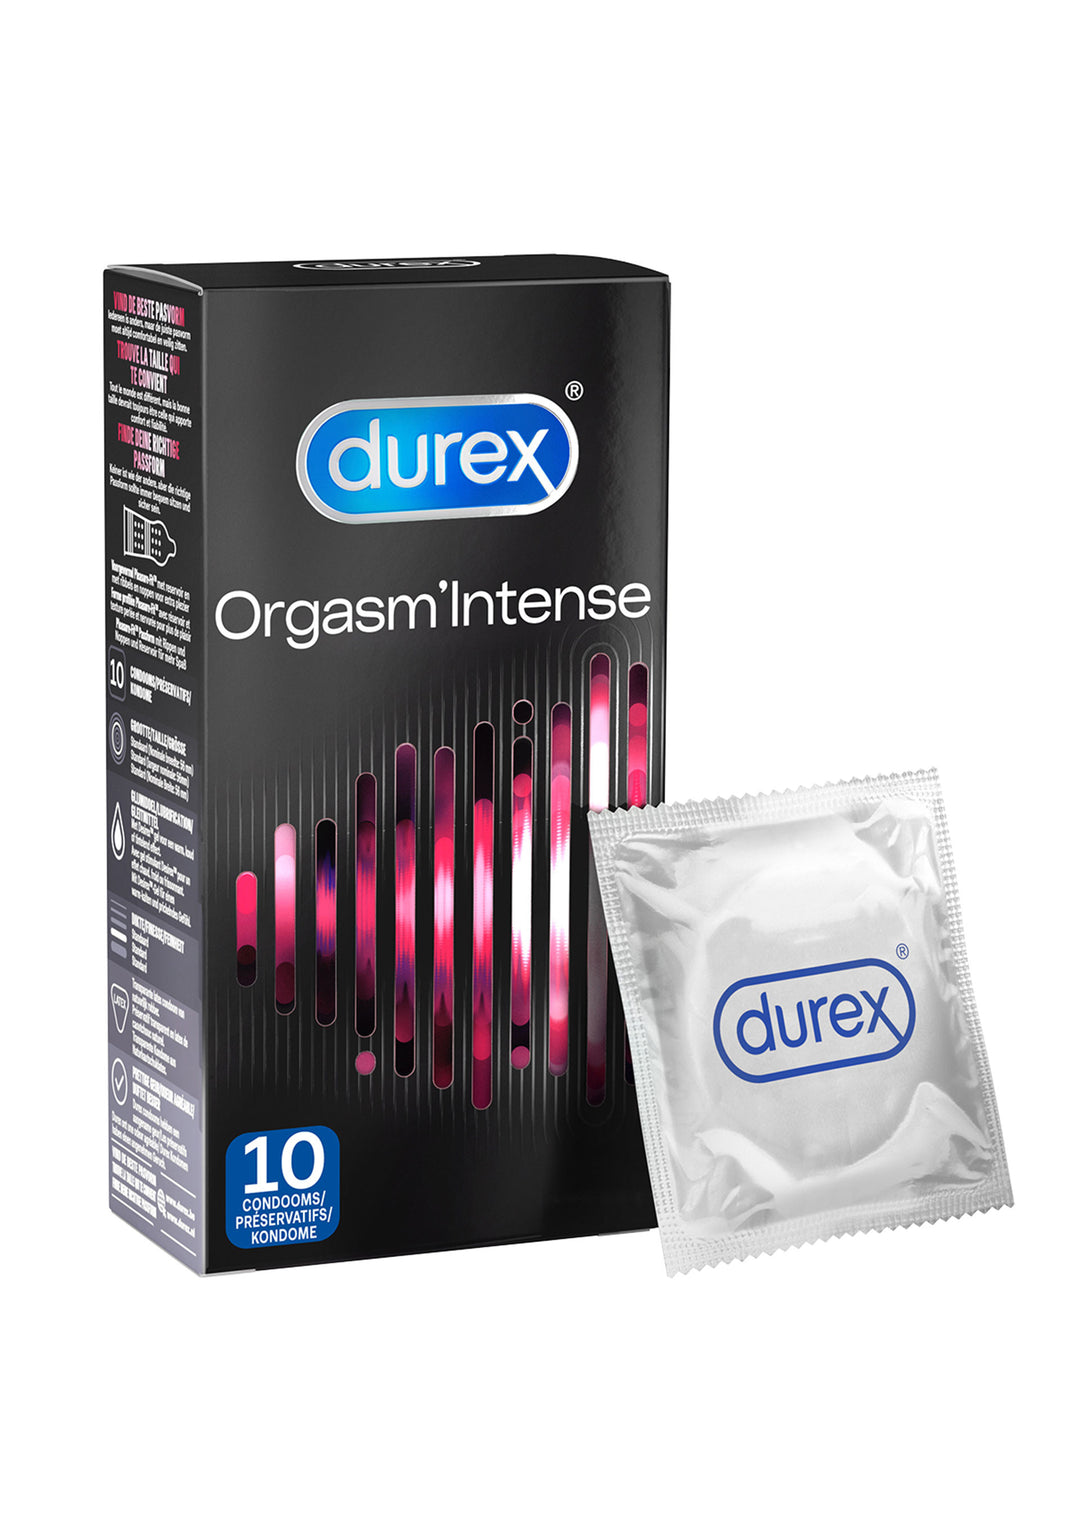 DUREX Orgasm Intense condoms